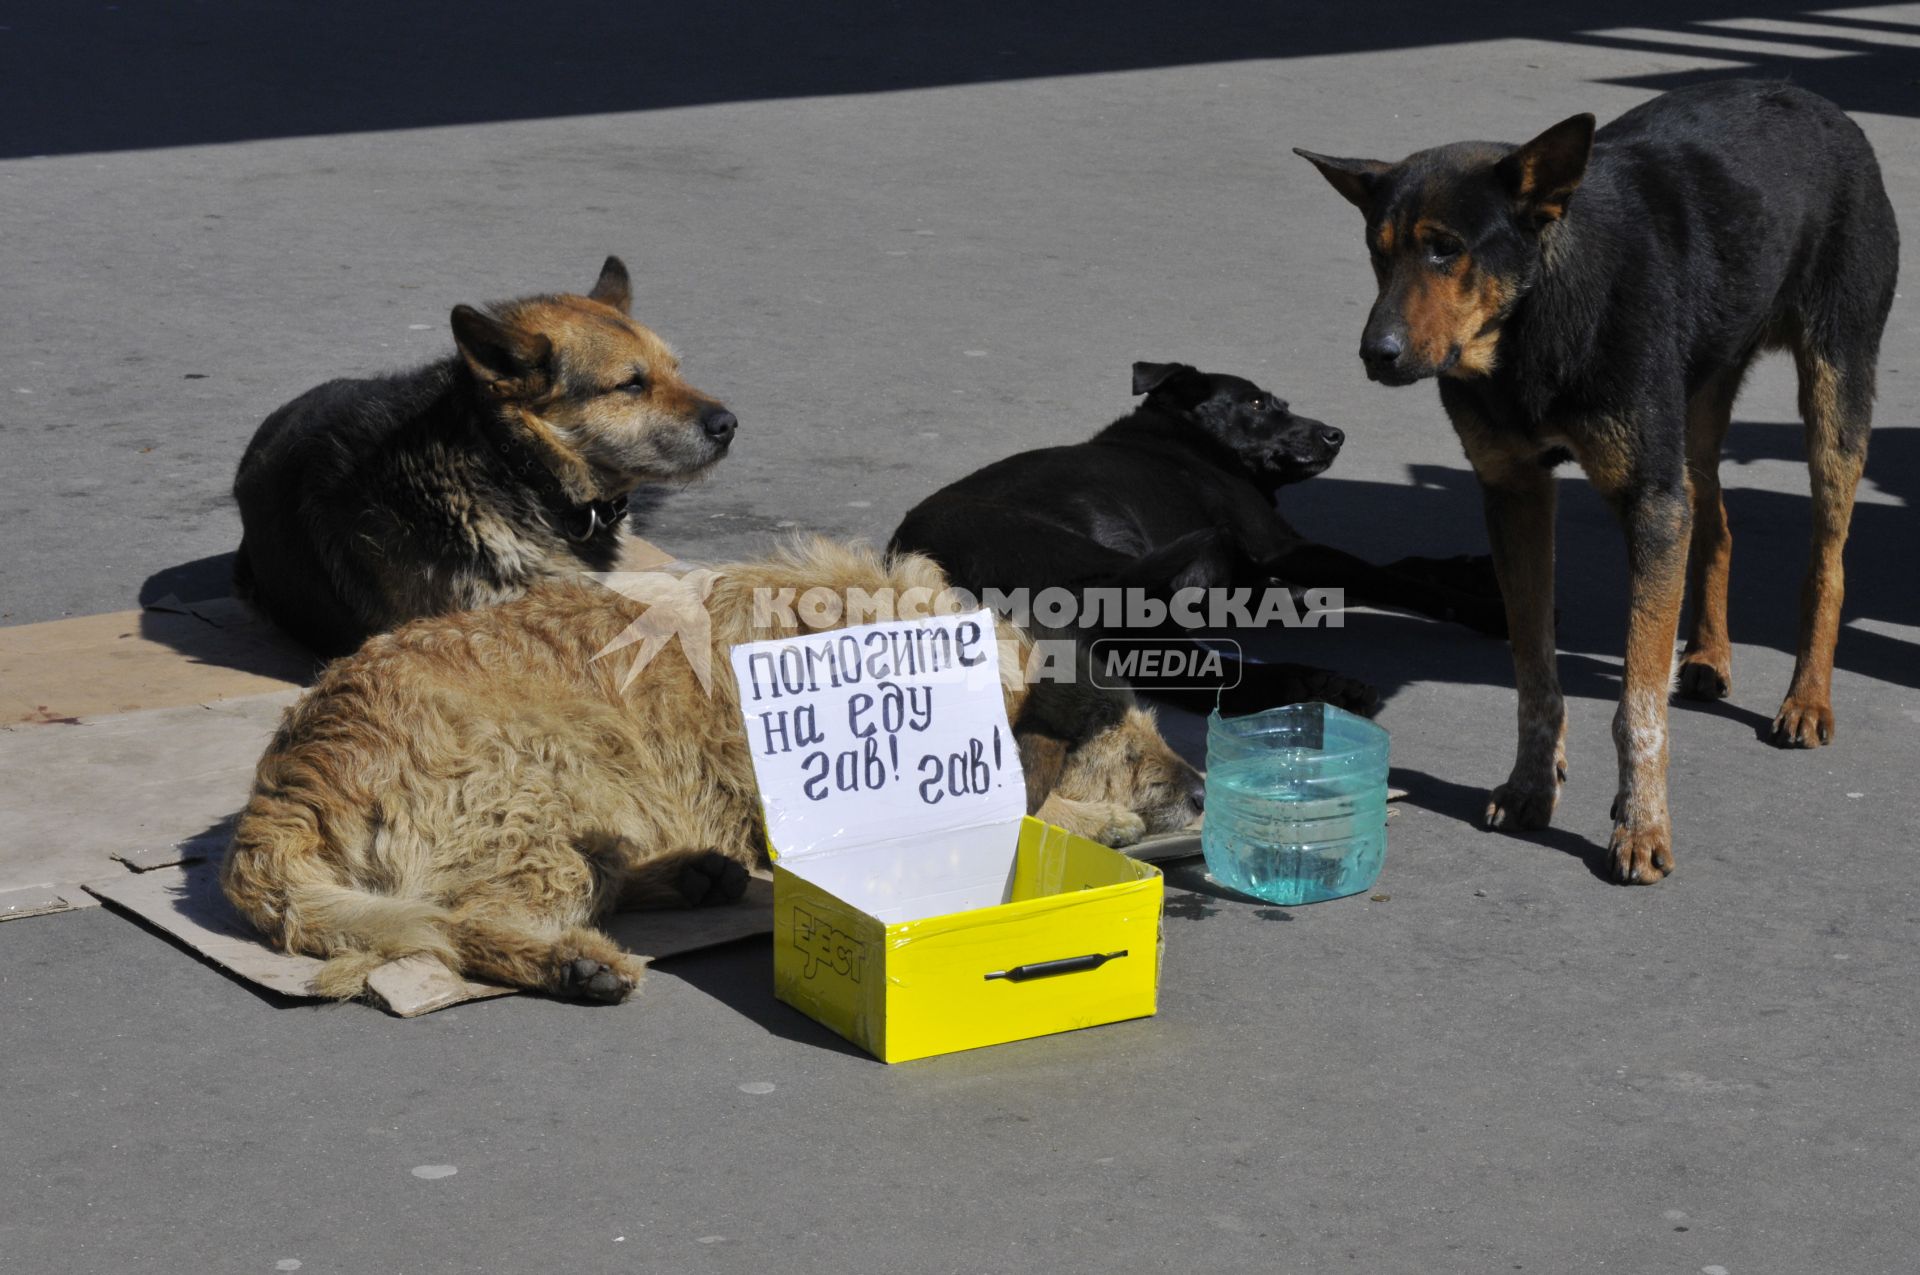 Табличка `Помогите на еду` рядом с бездомными собаками.